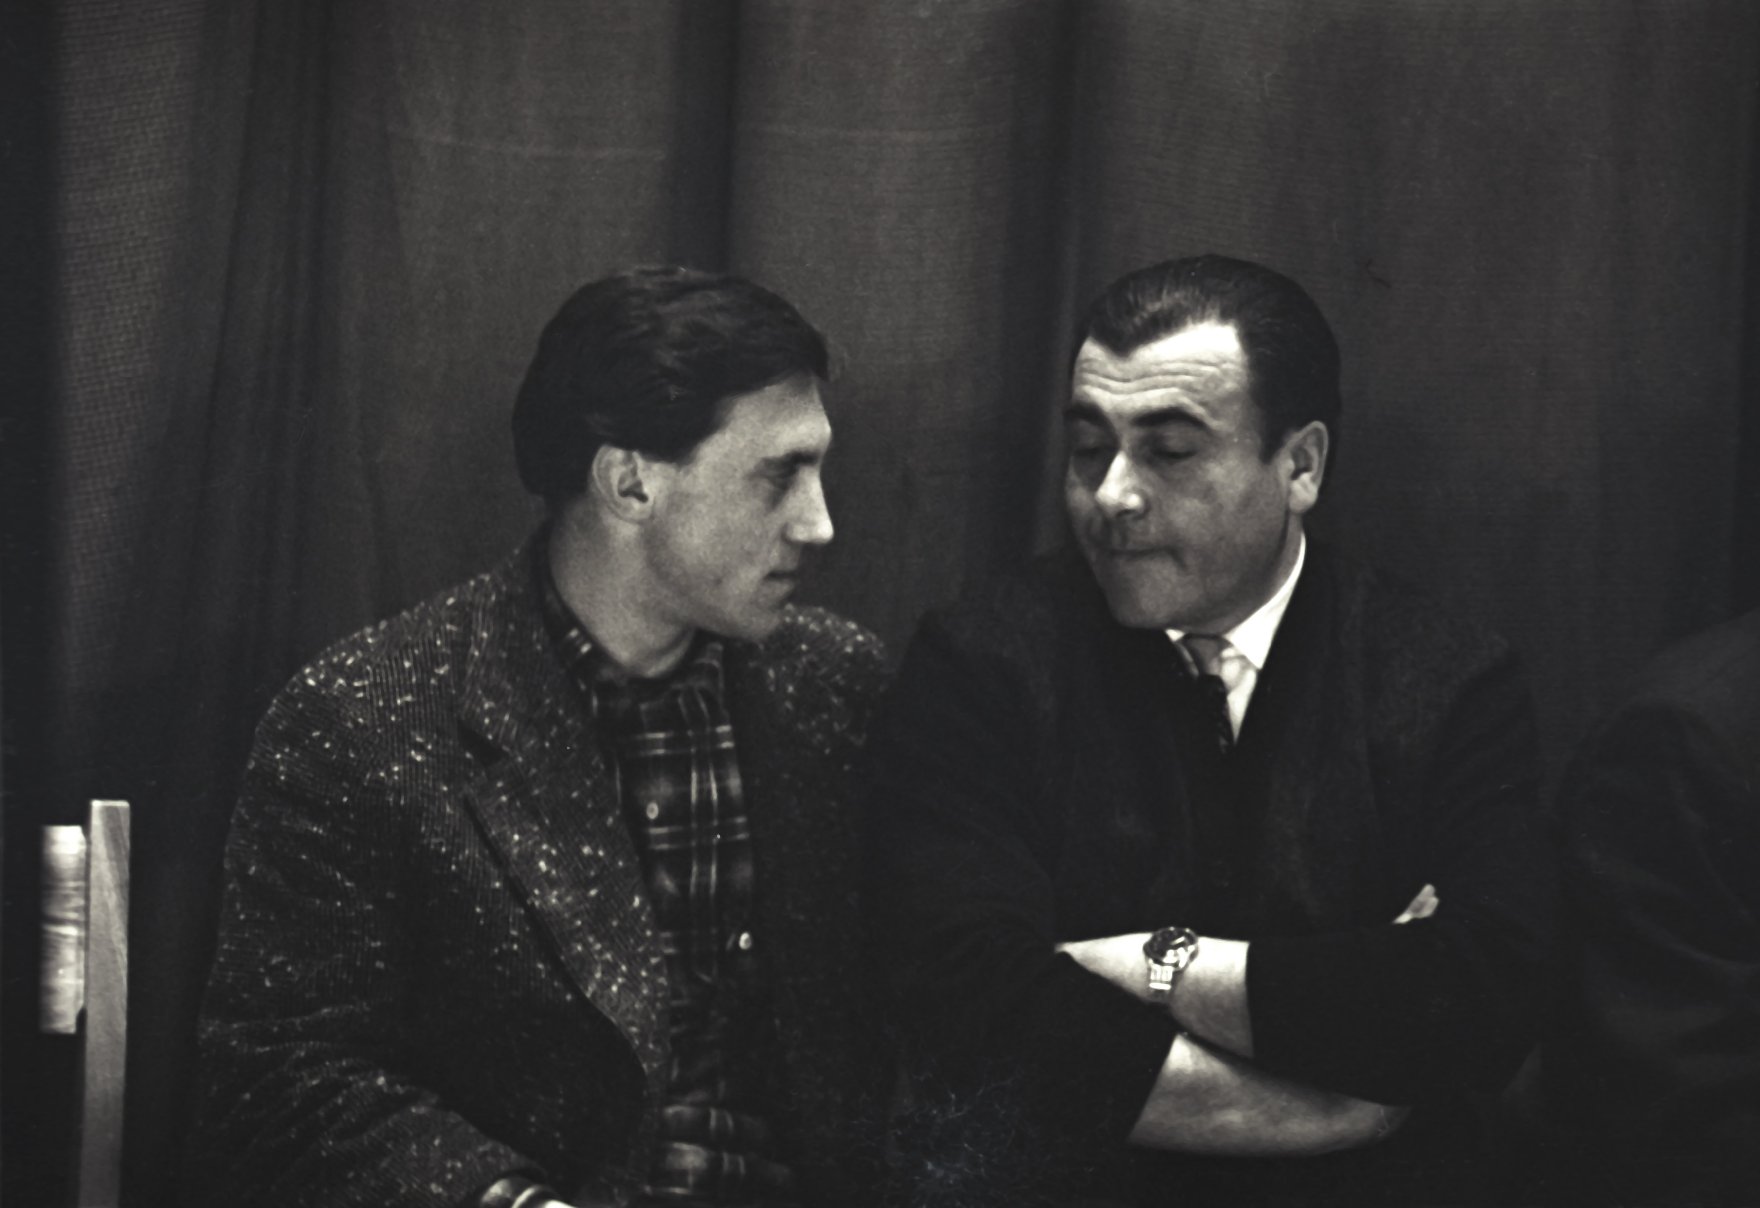 М. Анчаров и В. Высоцкий во время выступления в Политехническом музее 05.04.66 (фото Марка Никонова)